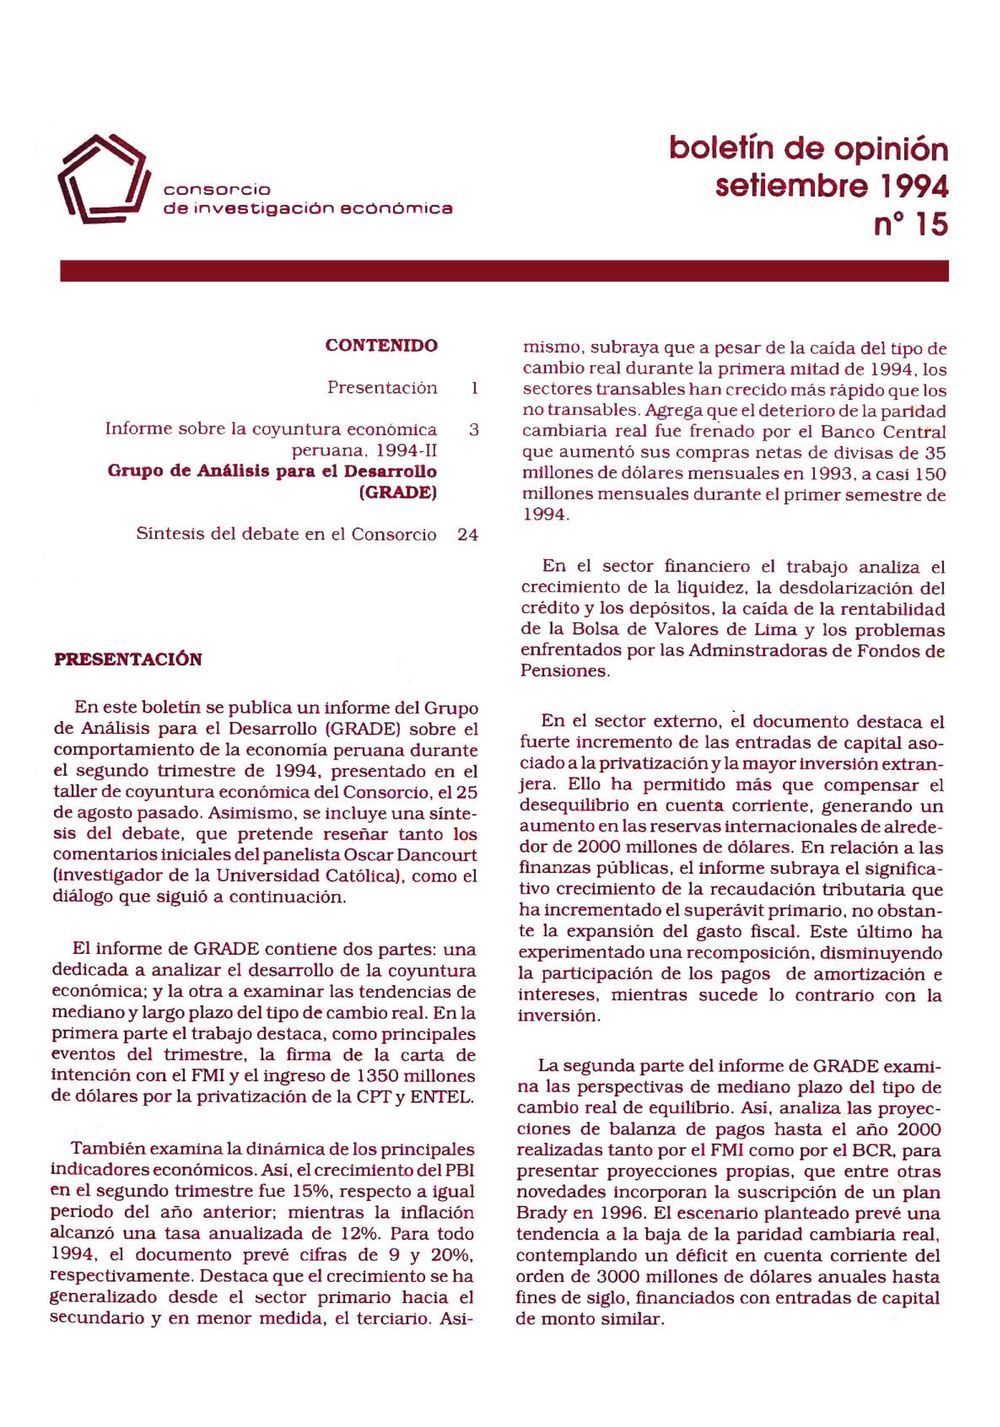 Boletín de opinión: Análisis de la economía peruana, 1994-II